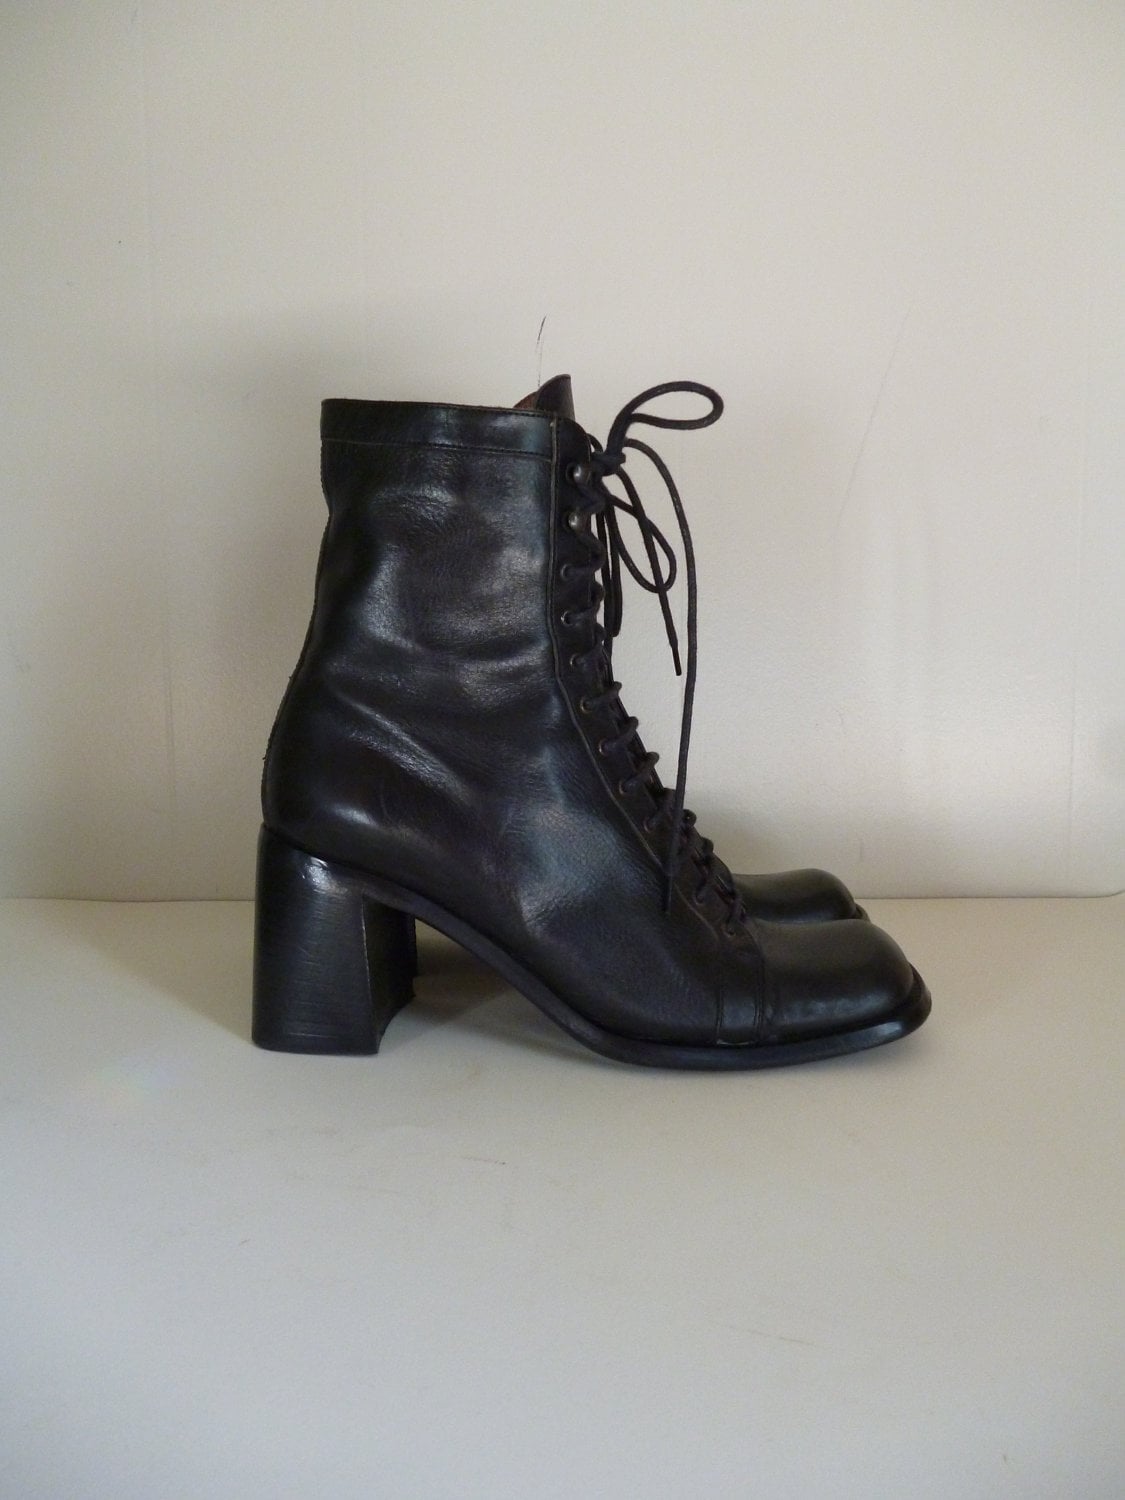 Size 7 / Raffaella Venturini boots / Made in Italy/ Black Lace